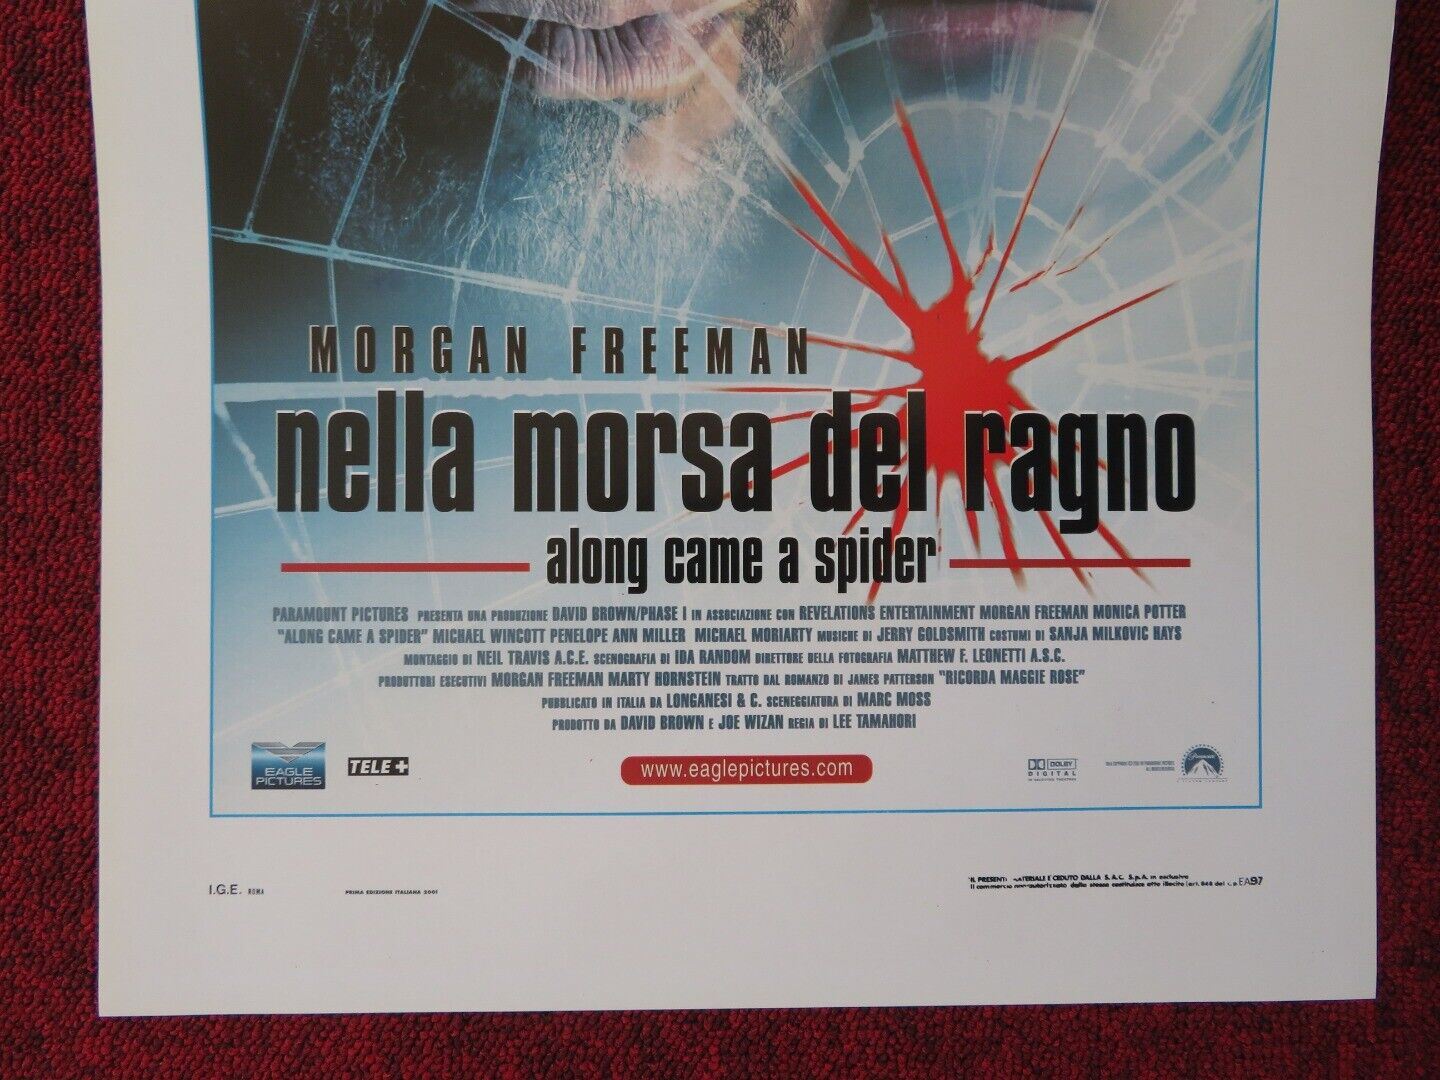 ALONG CAME A SPIDER ITALIAN LOCANDINA (27.5"x13") POSTER MORGAN FREEMAN 2001